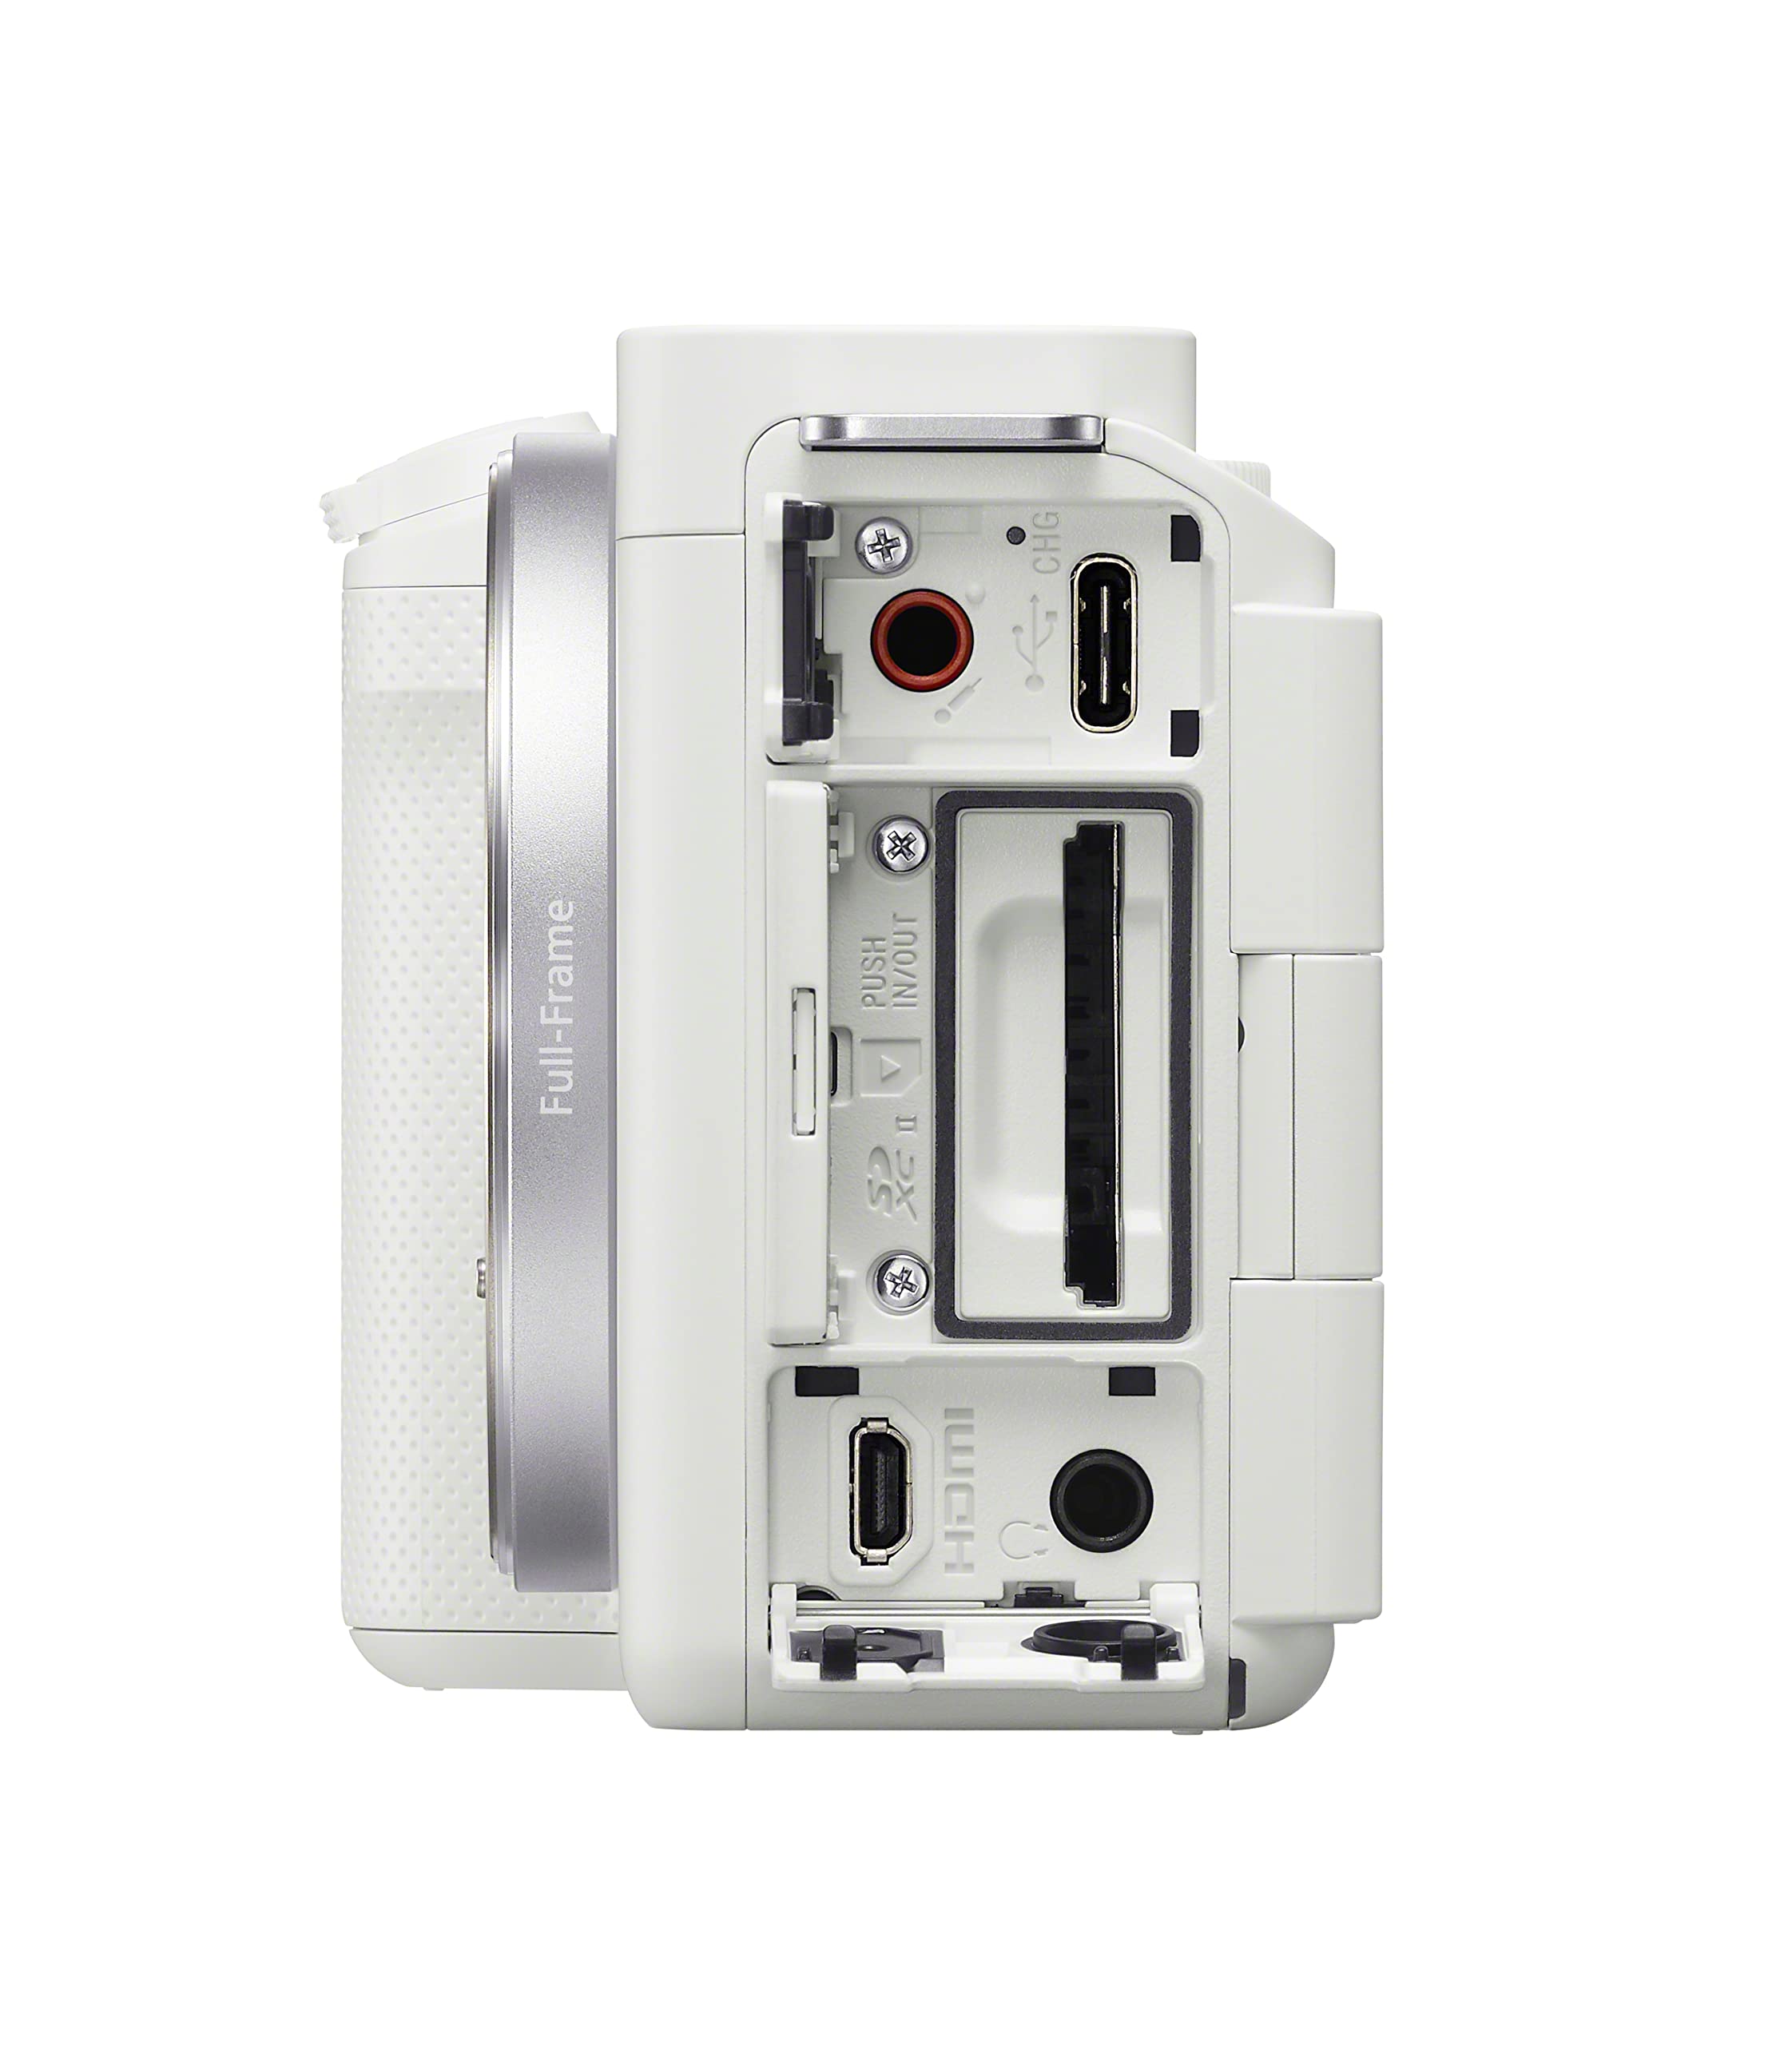 Sony Alpha ZV-E1 Full-Frame Interchangeable Lens Mirrorless Vlog Camera - White Body